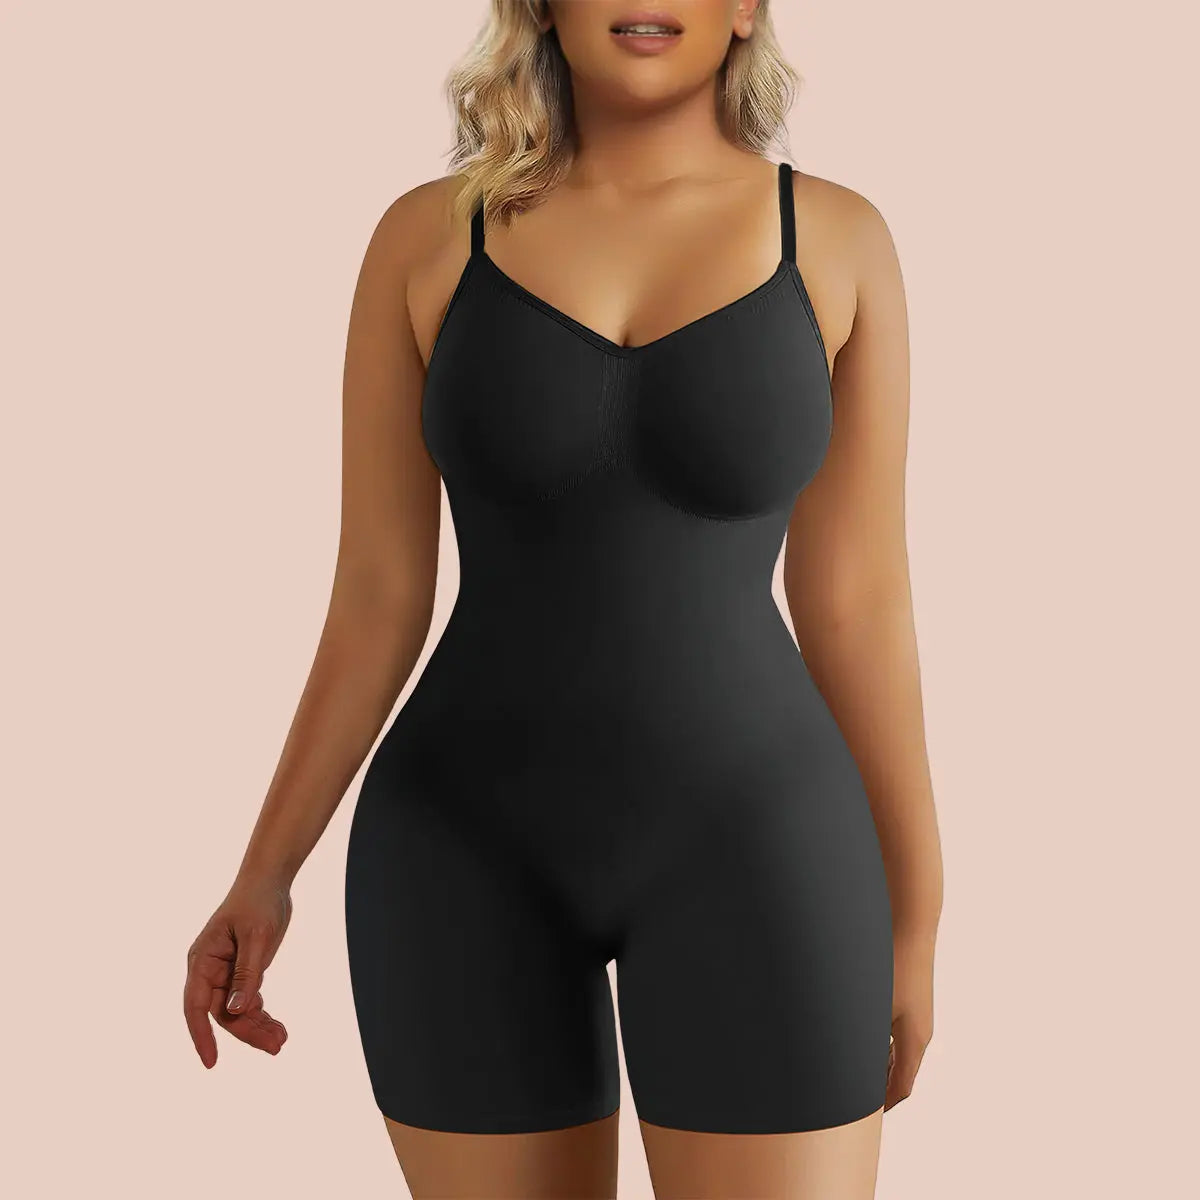 Buy Women's Full Body Shaper Tummy Control Bodysuit Shapewear Mid